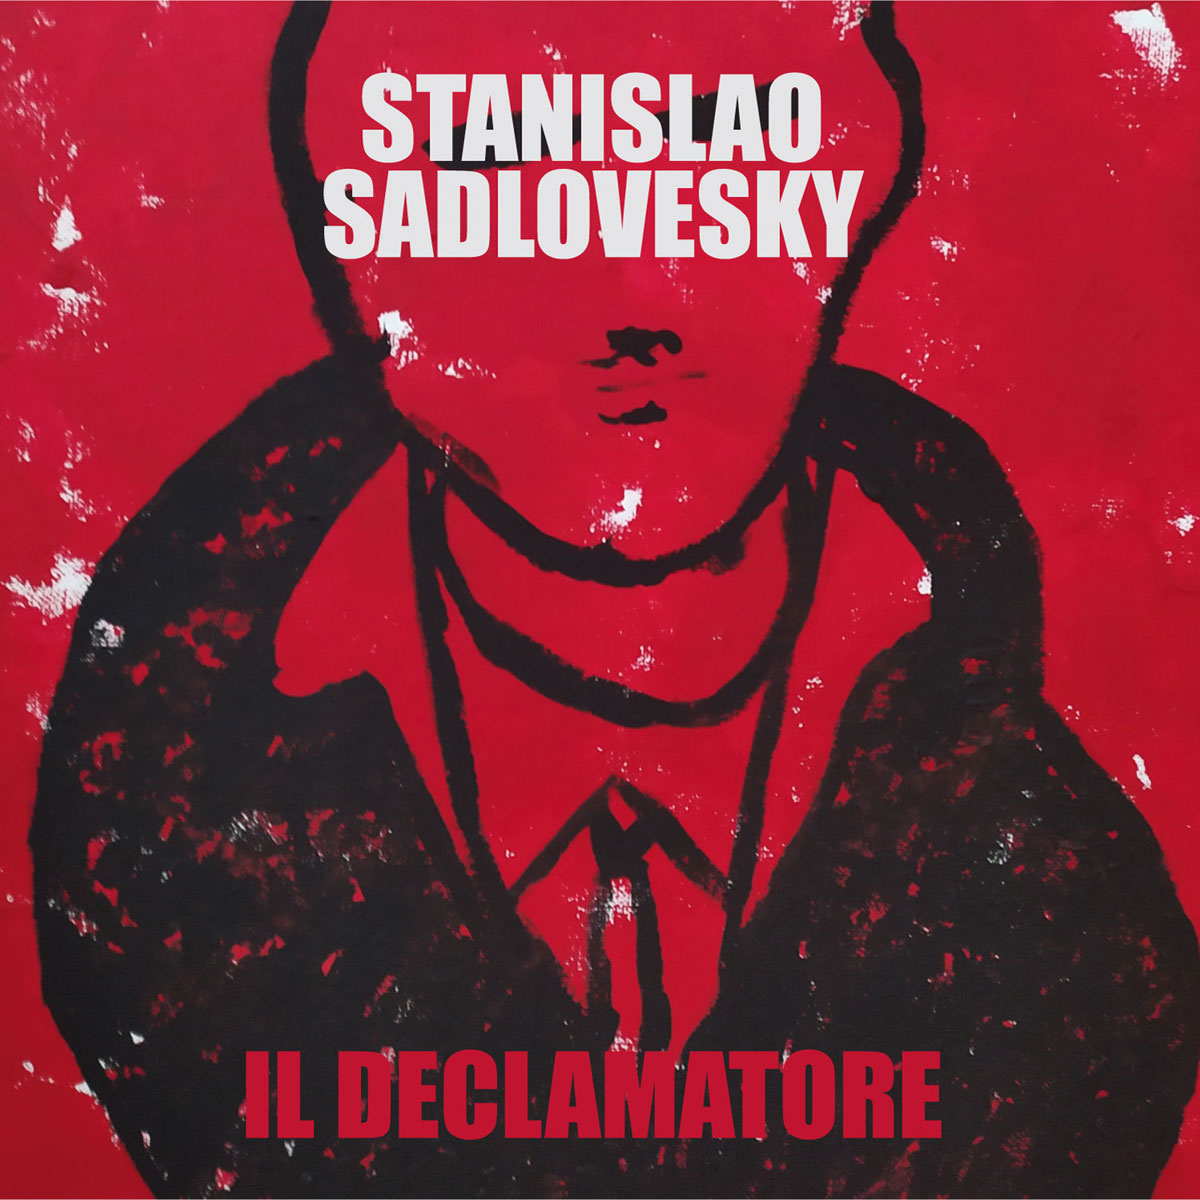 Stanislao Sadlovesky: il loro viaggio profondo nell’inconscio con “Il declamatore”